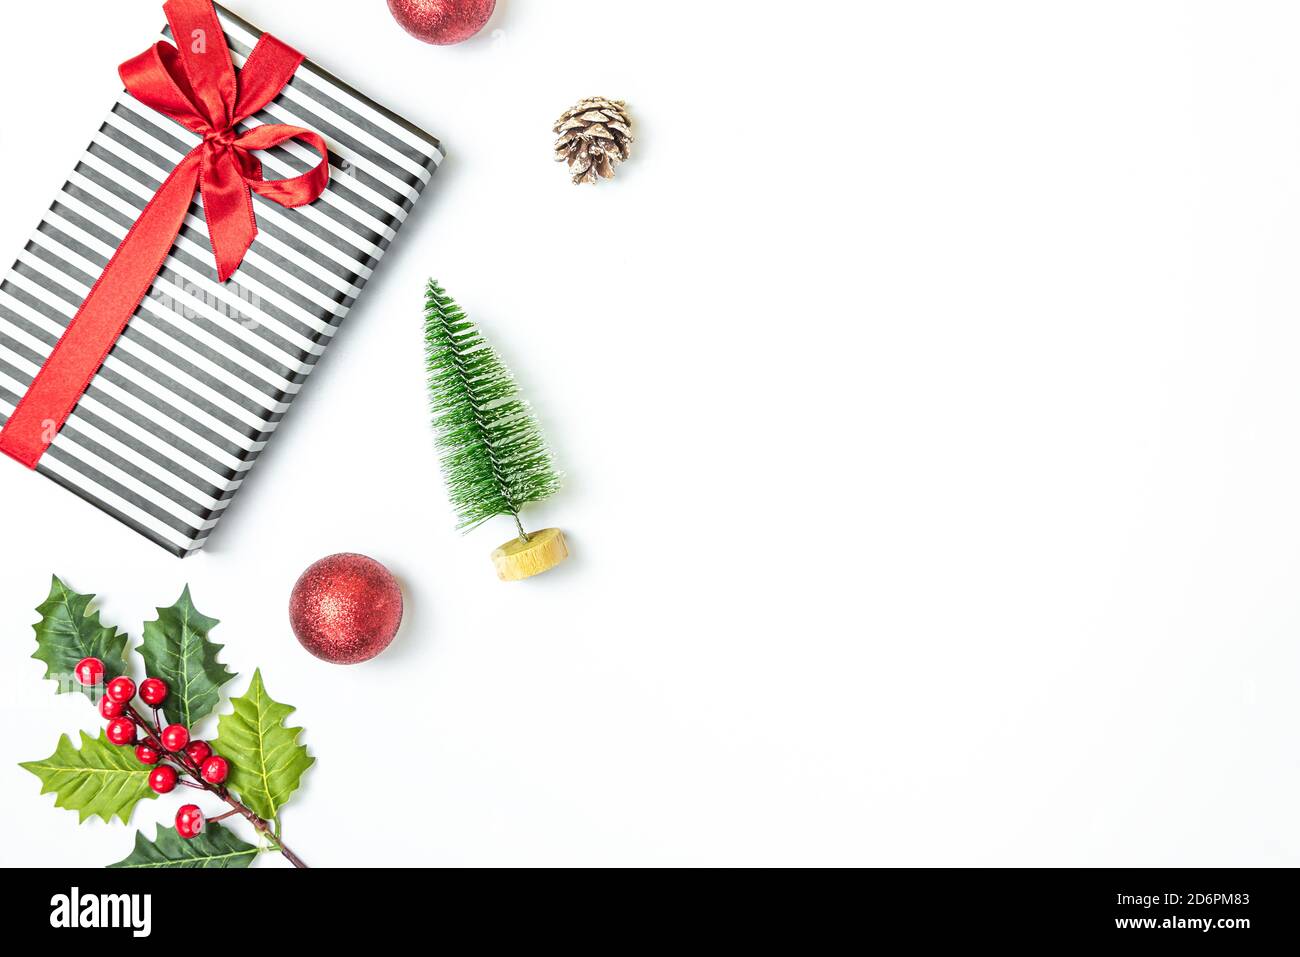 Confezione regalo confezionata in bianco e nero a righe su sfondo bianco. Regali di Natale e preparazione ornamentale. Spazio di copia. Foto Stock